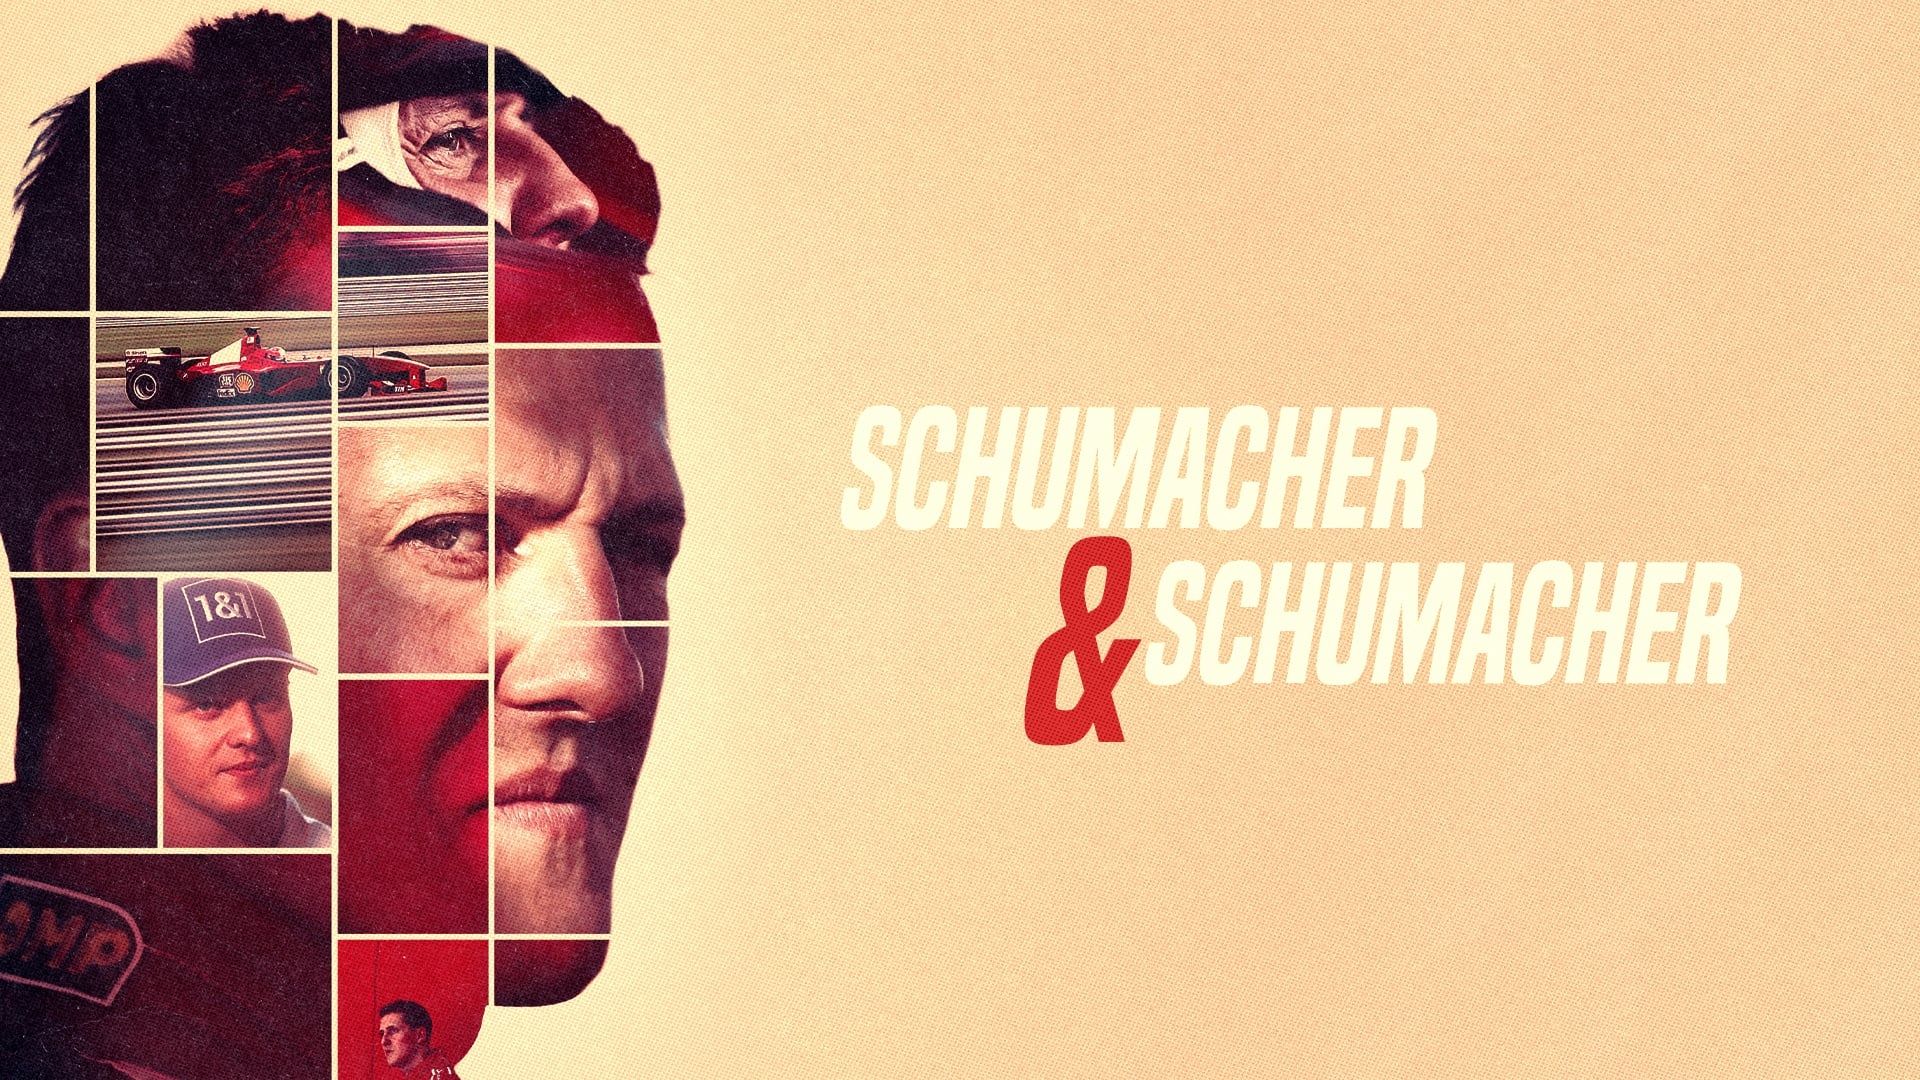 Schumacher & Schumacher background